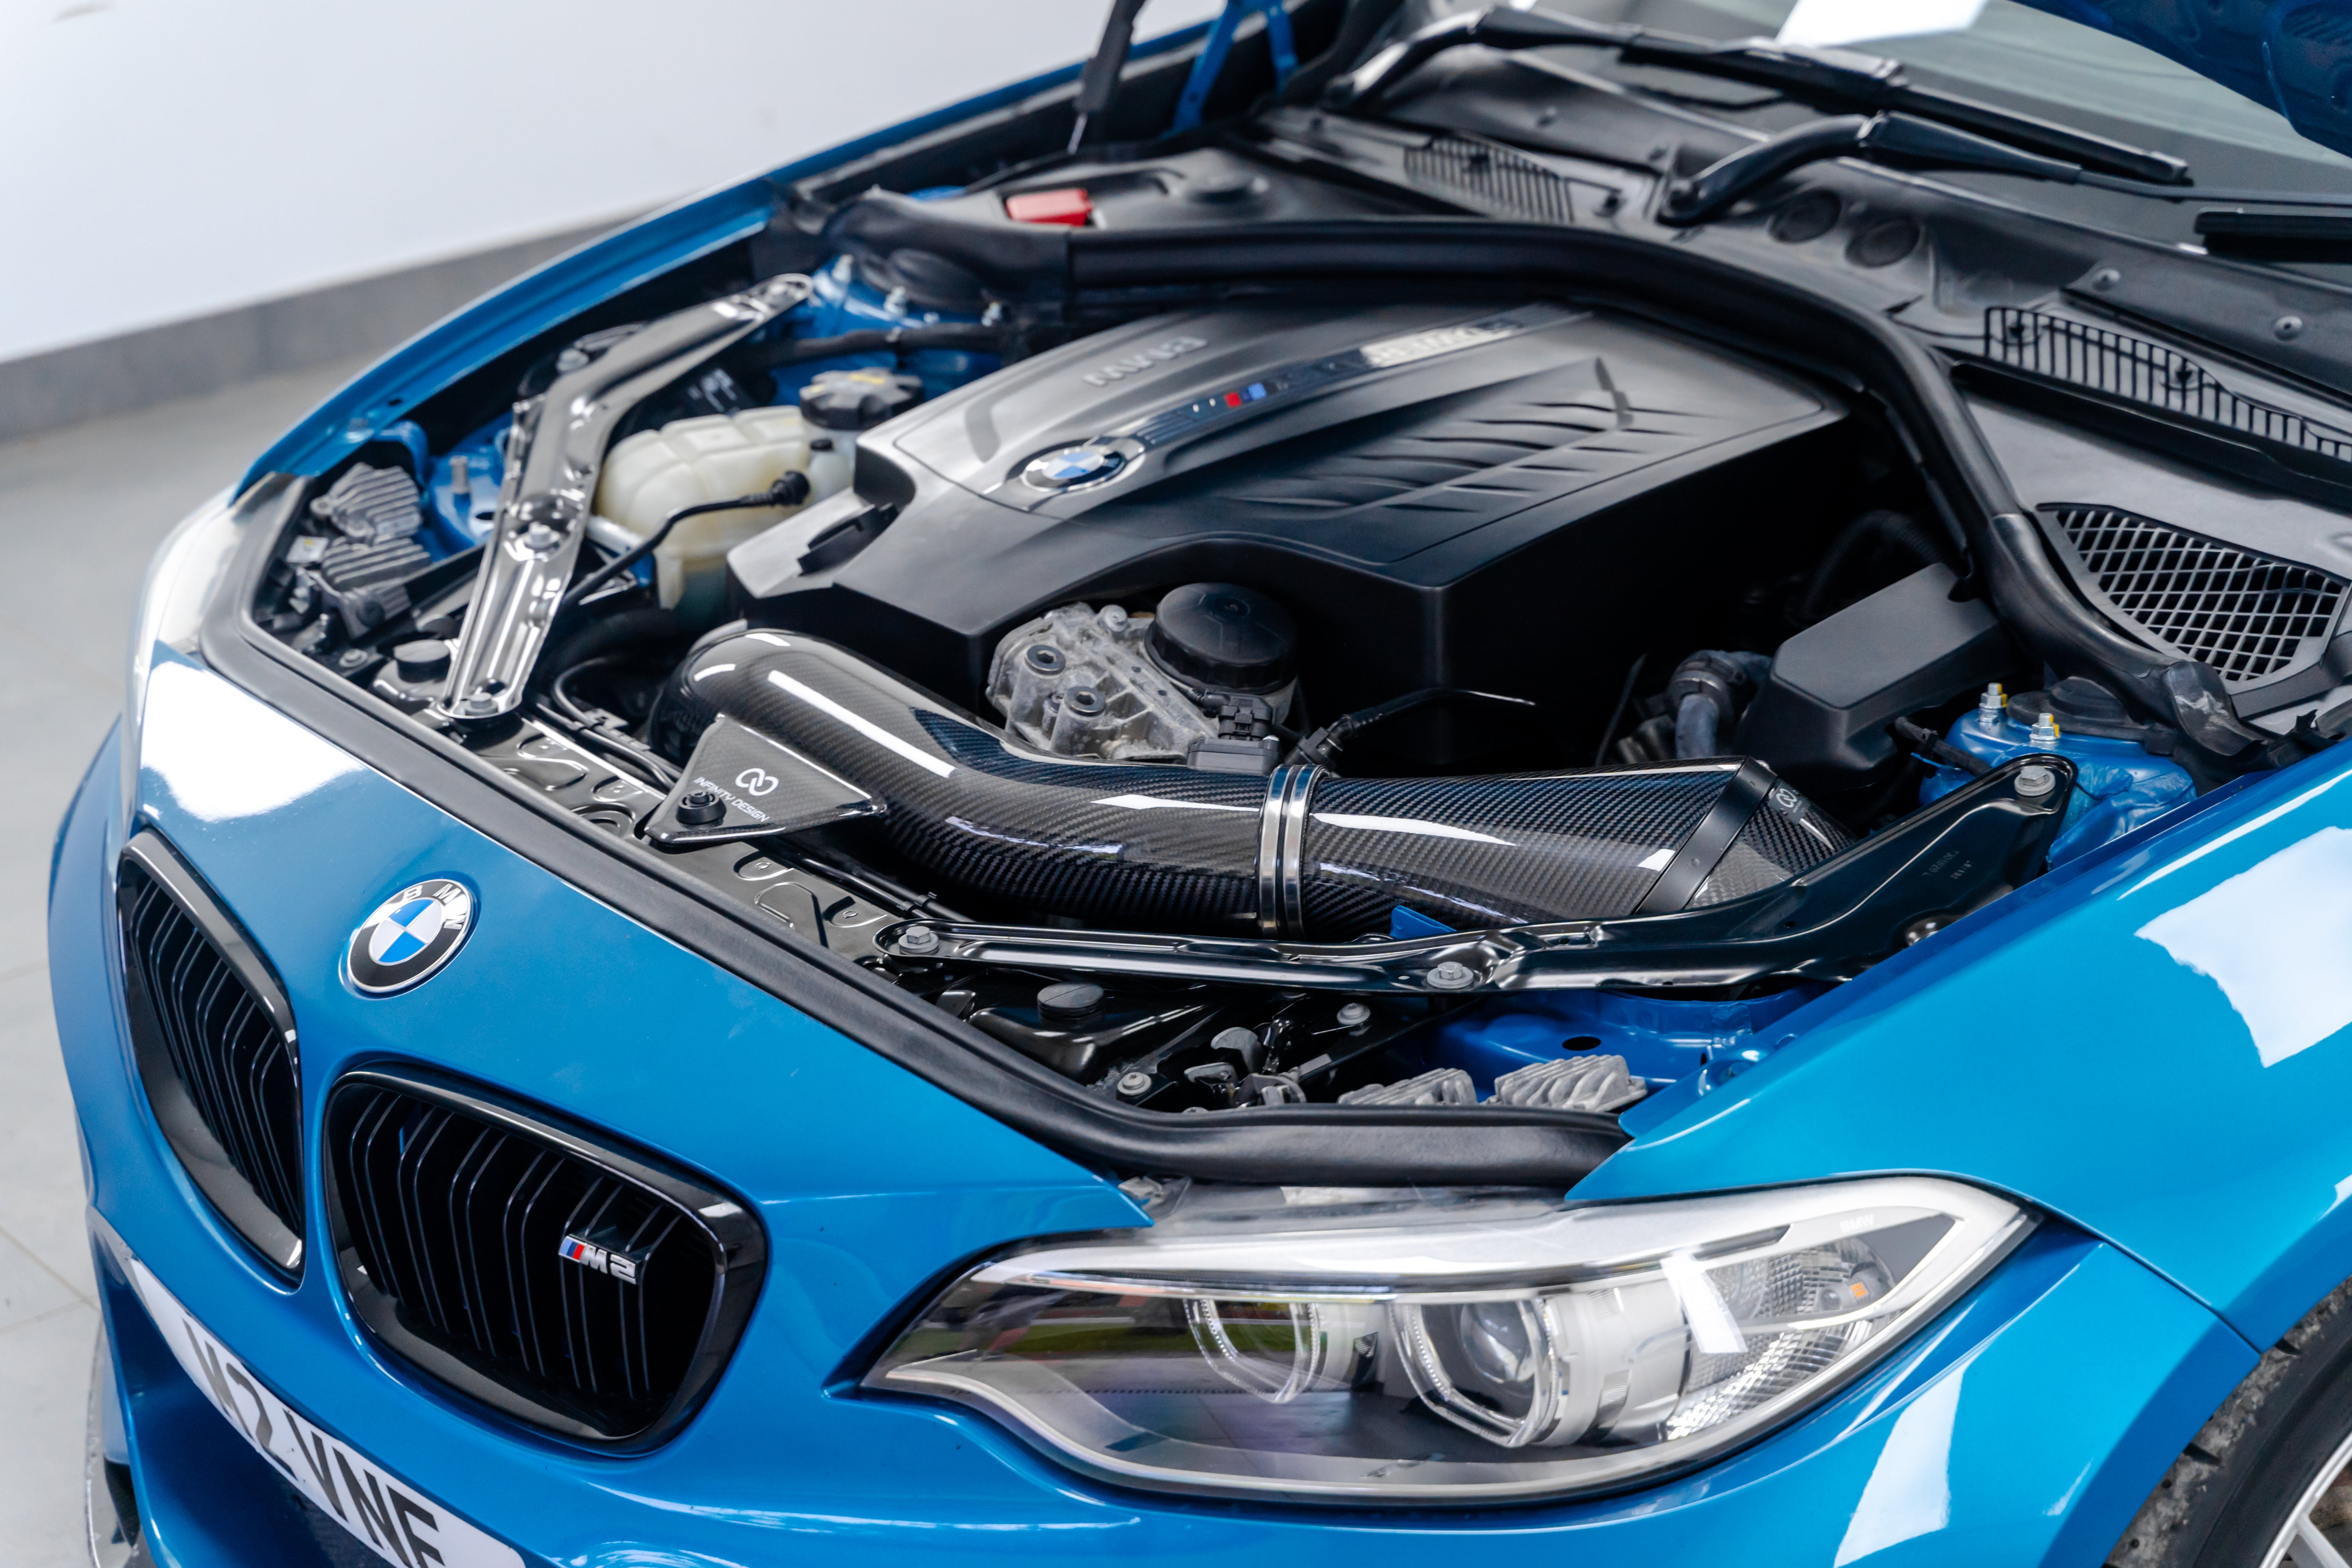 BMW F-Series M135i/M235i/335i/435i/M2 N55 Carbon Fiber Air Intake